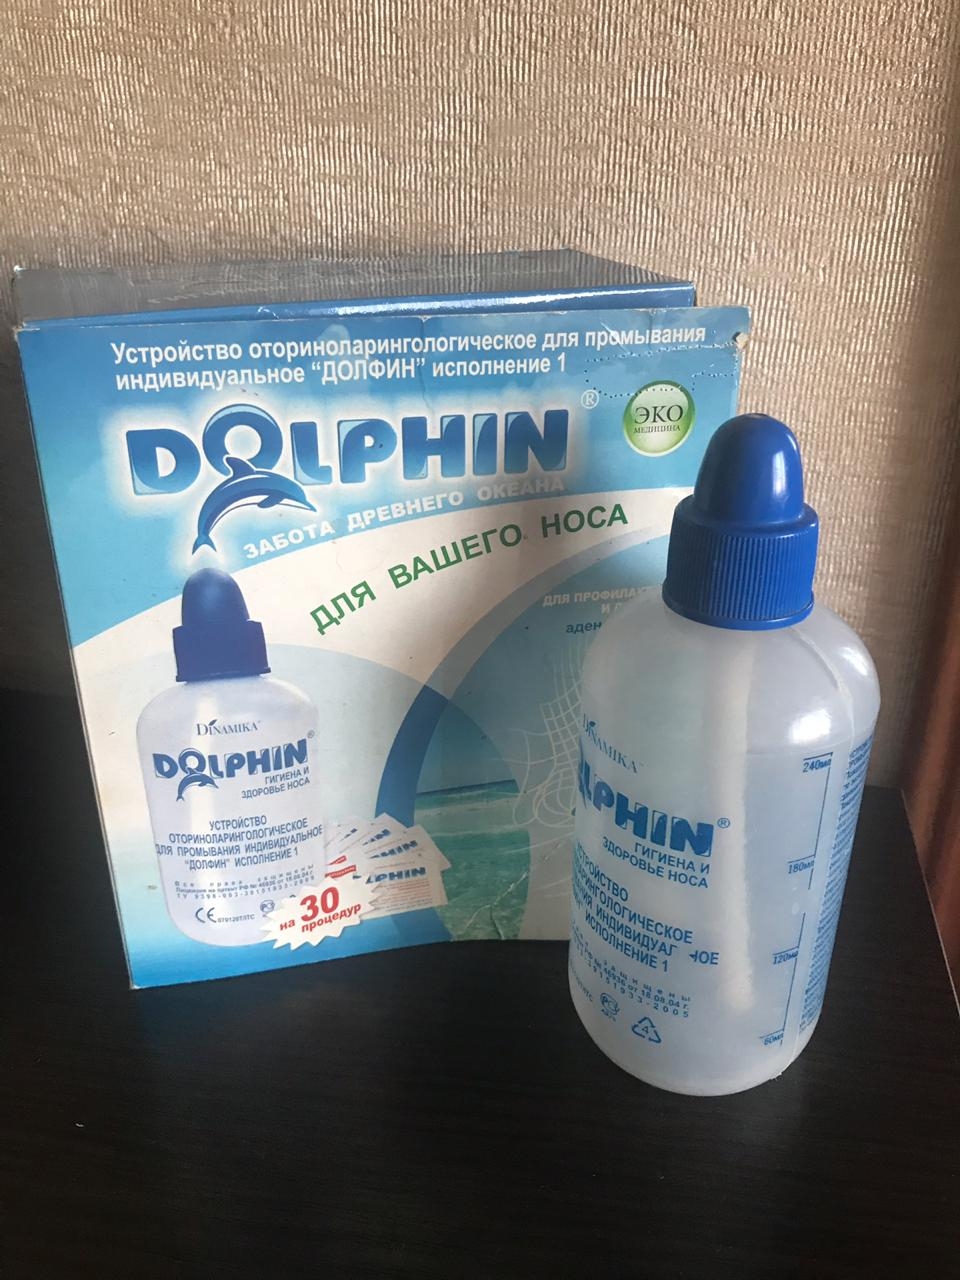 Долфин для промывания носа фото